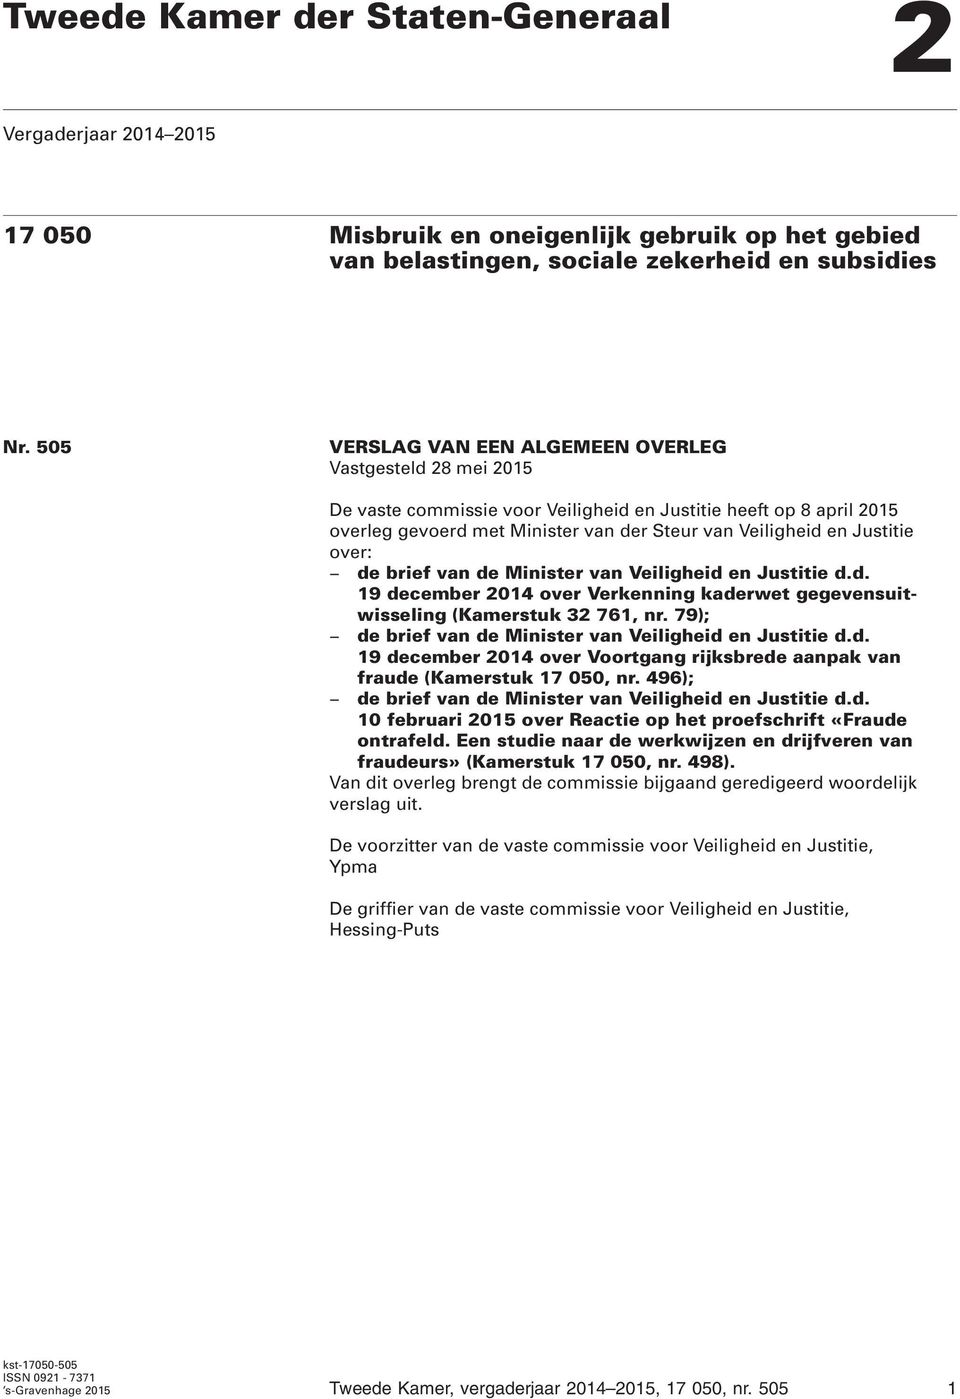 over: de brief van de Minister van Veiligheid en Justitie d.d. 19 december 2014 over Verkenning kaderwet gegevensuitwisseling (Kamerstuk 32 761, nr.